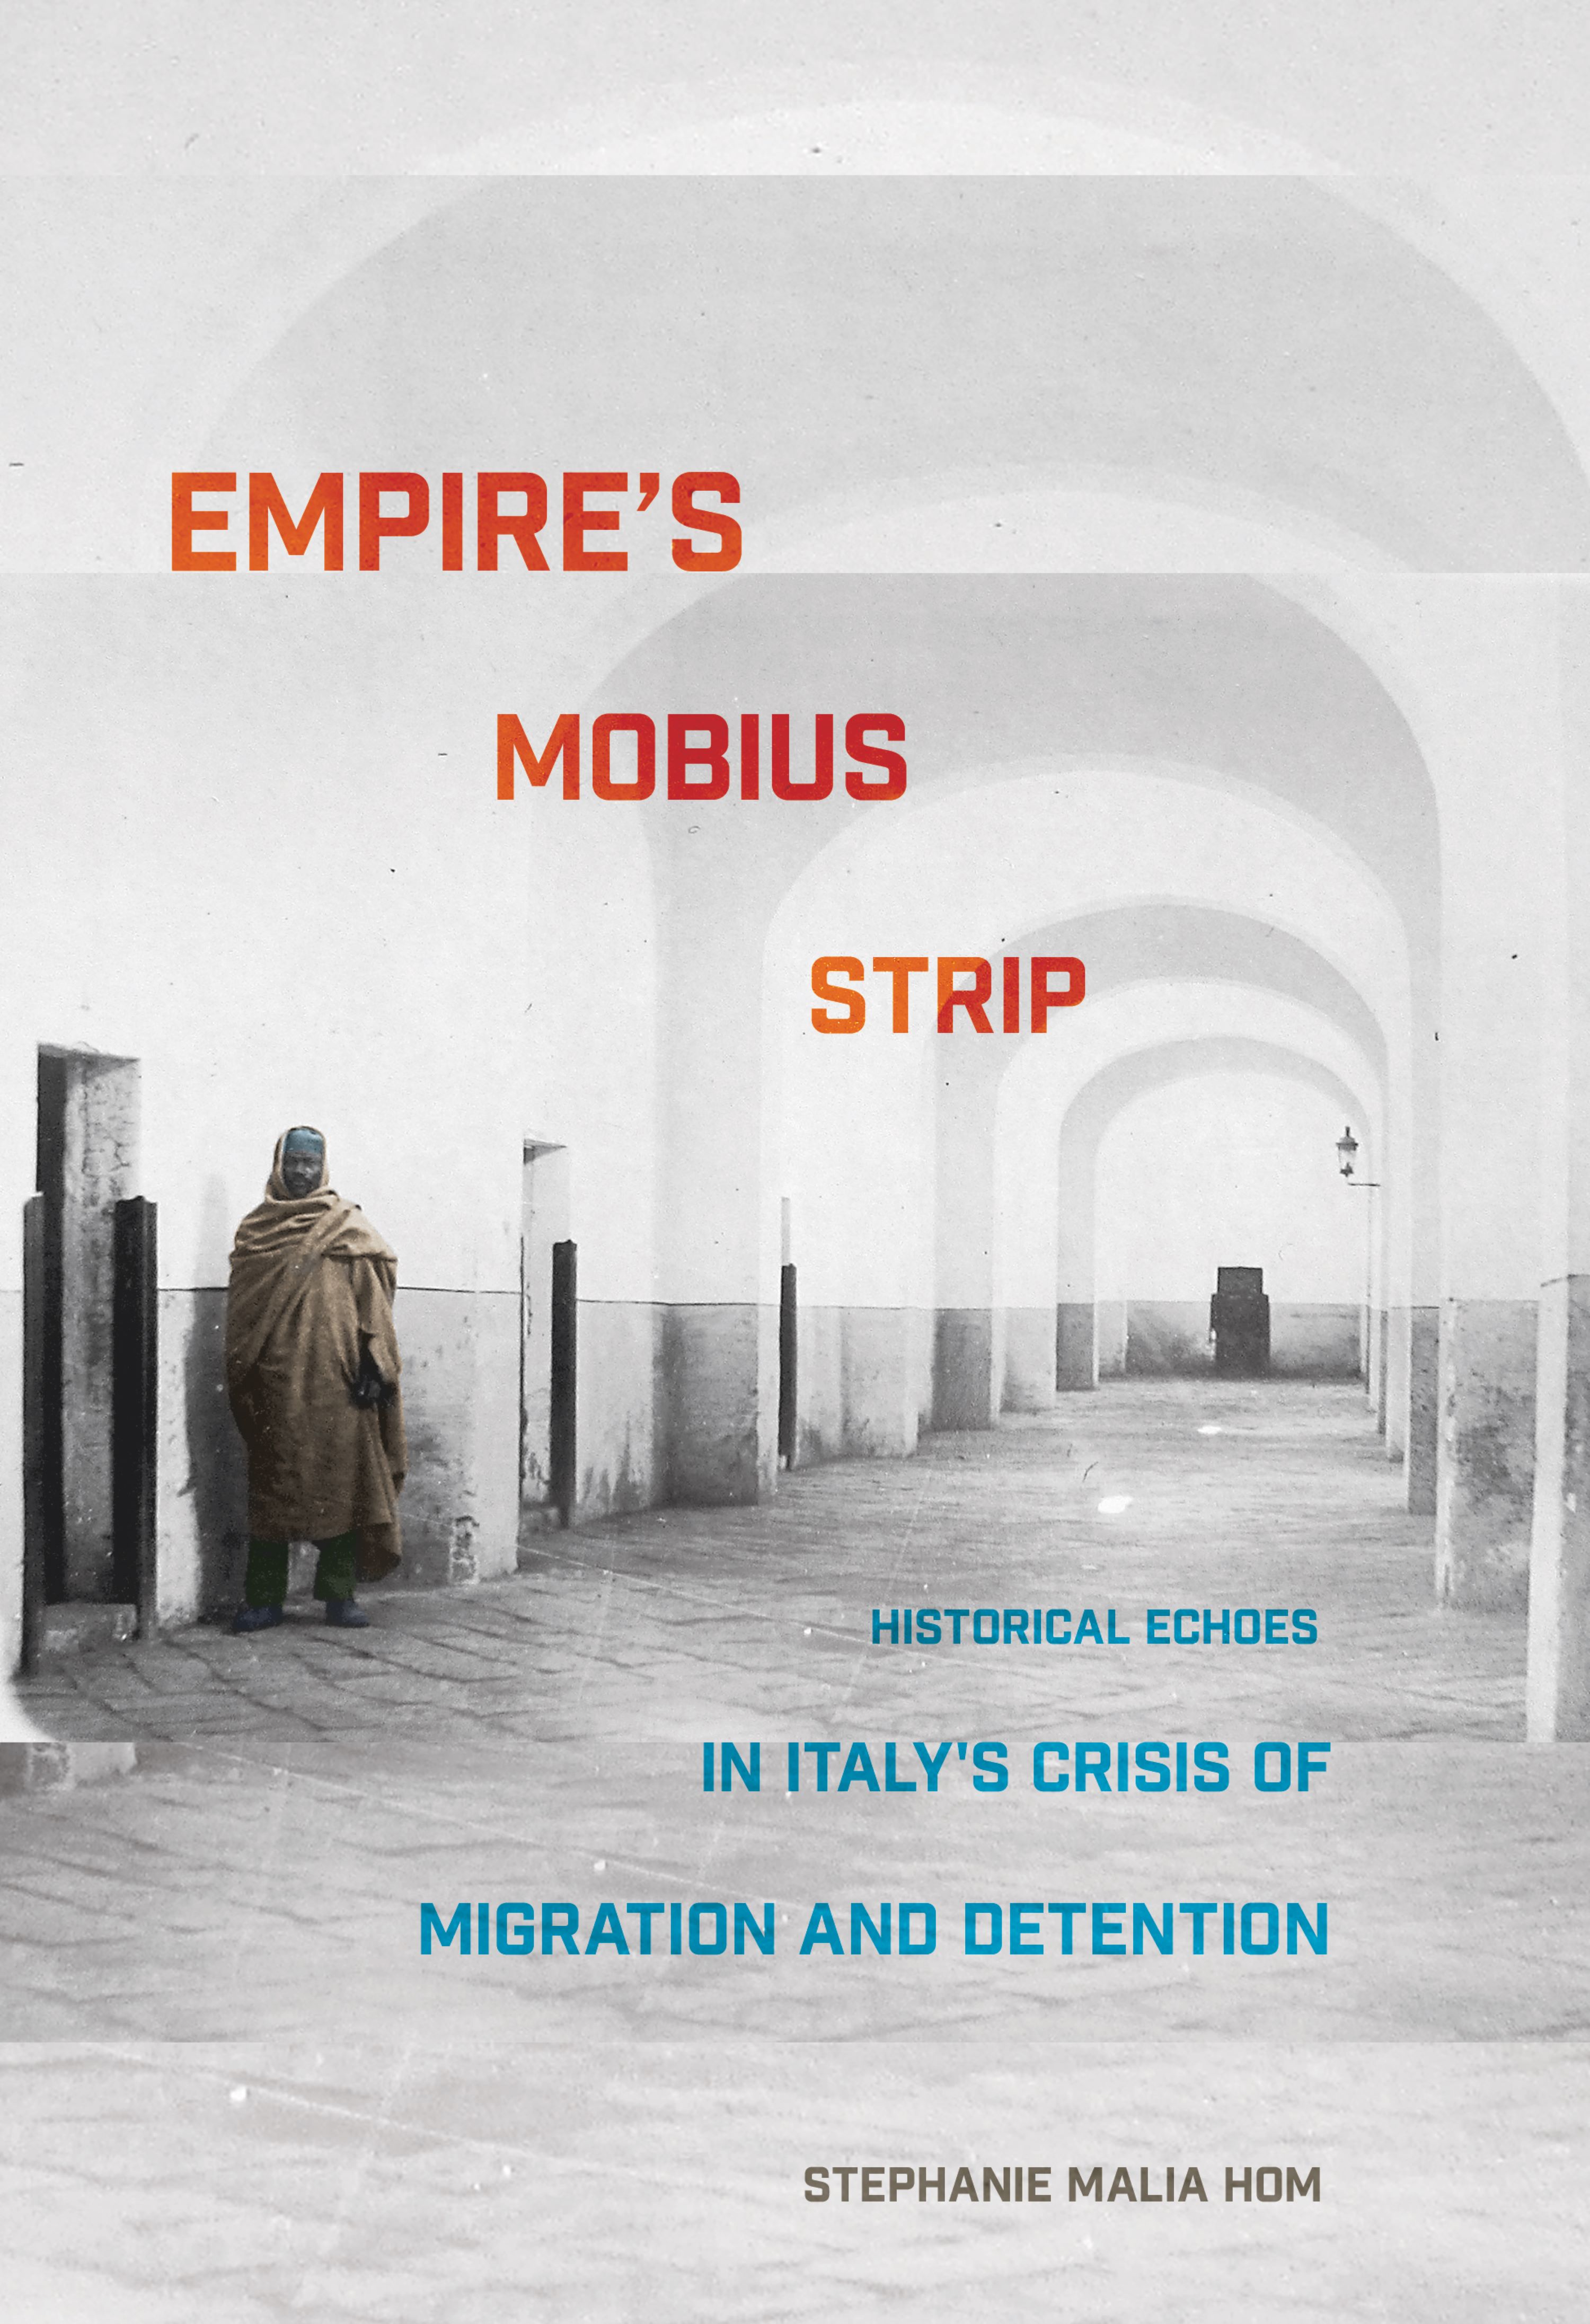 Empire's Mobius Strip by Stephanie Malia Hom